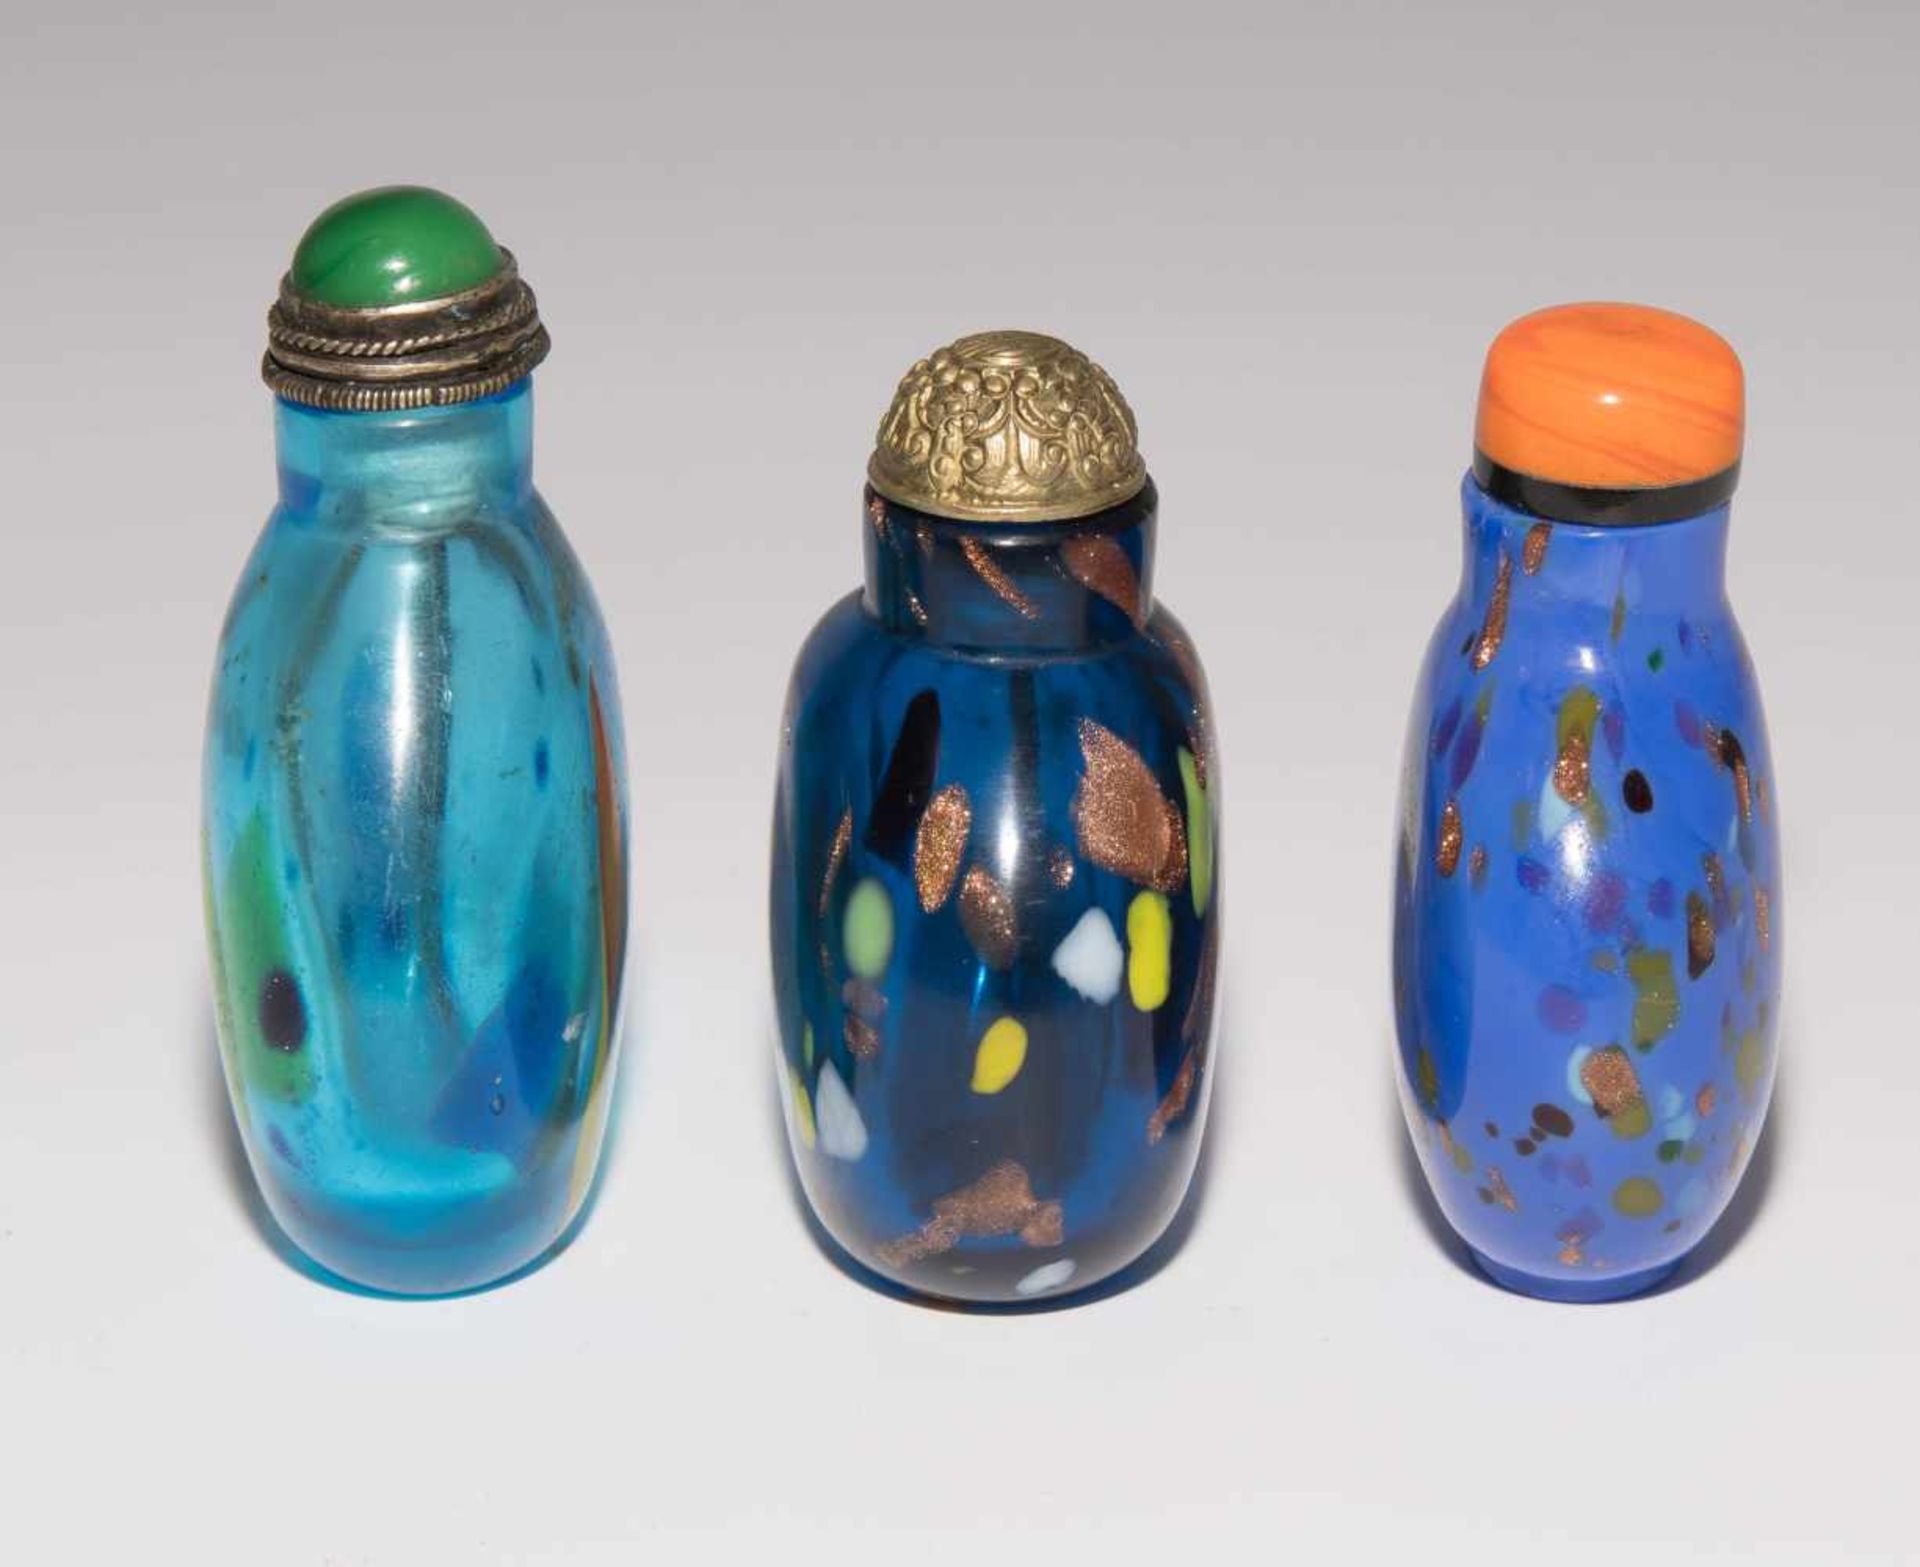 6 Glas Snuff BottlesChina. Opakes und transparentes Glas in verschiedenen Blautönen tlw. bunt - Image 4 of 15